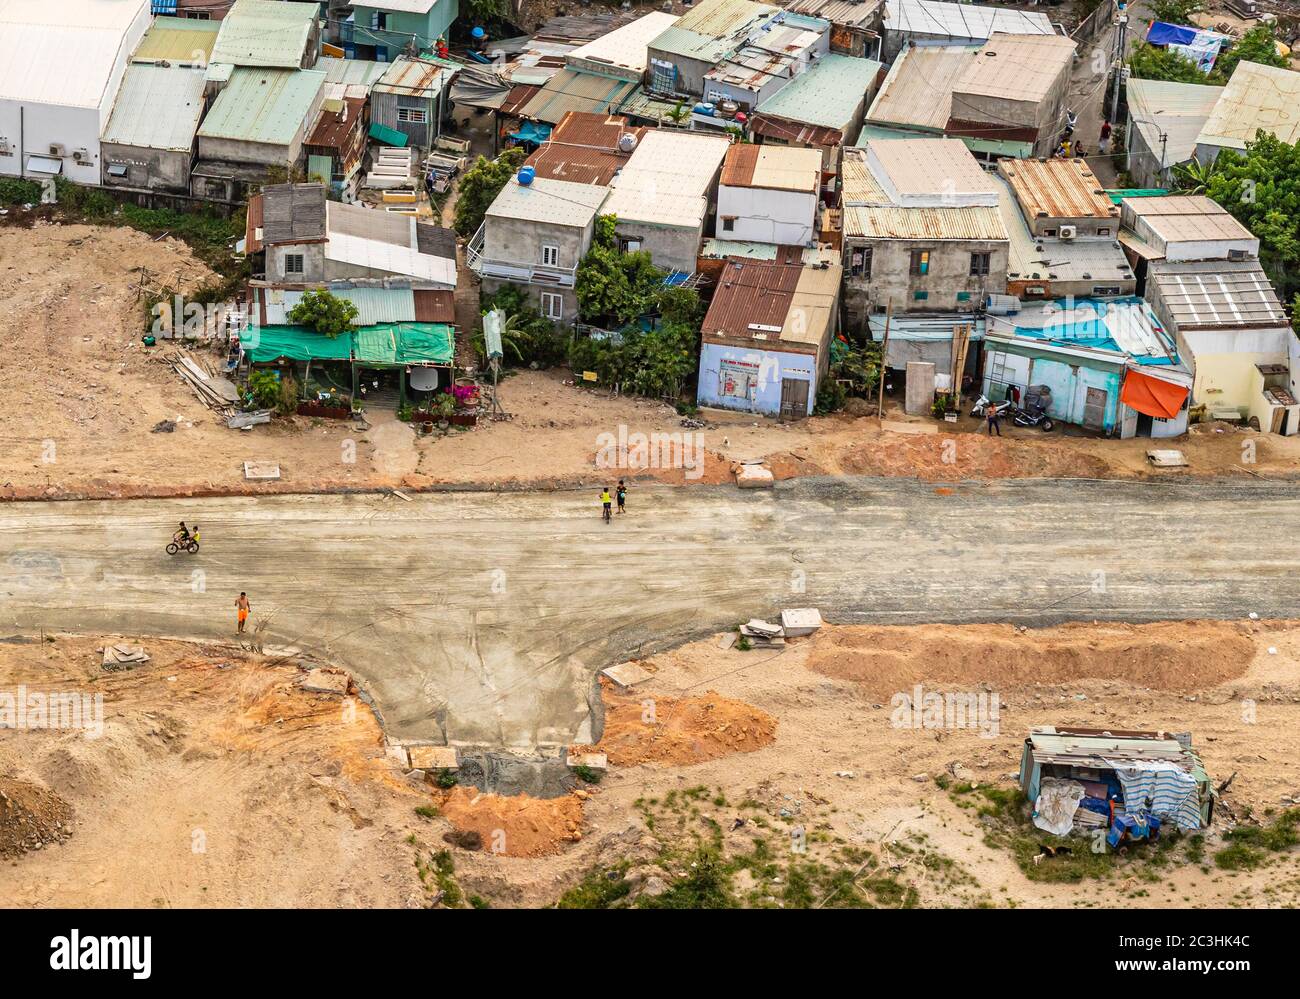 Vue aérienne des habitations urbaines de la ville côtière de Da Nang, Vietnam. Les enfants et les parents peuvent être vus jouer dans les rues. Banque D'Images